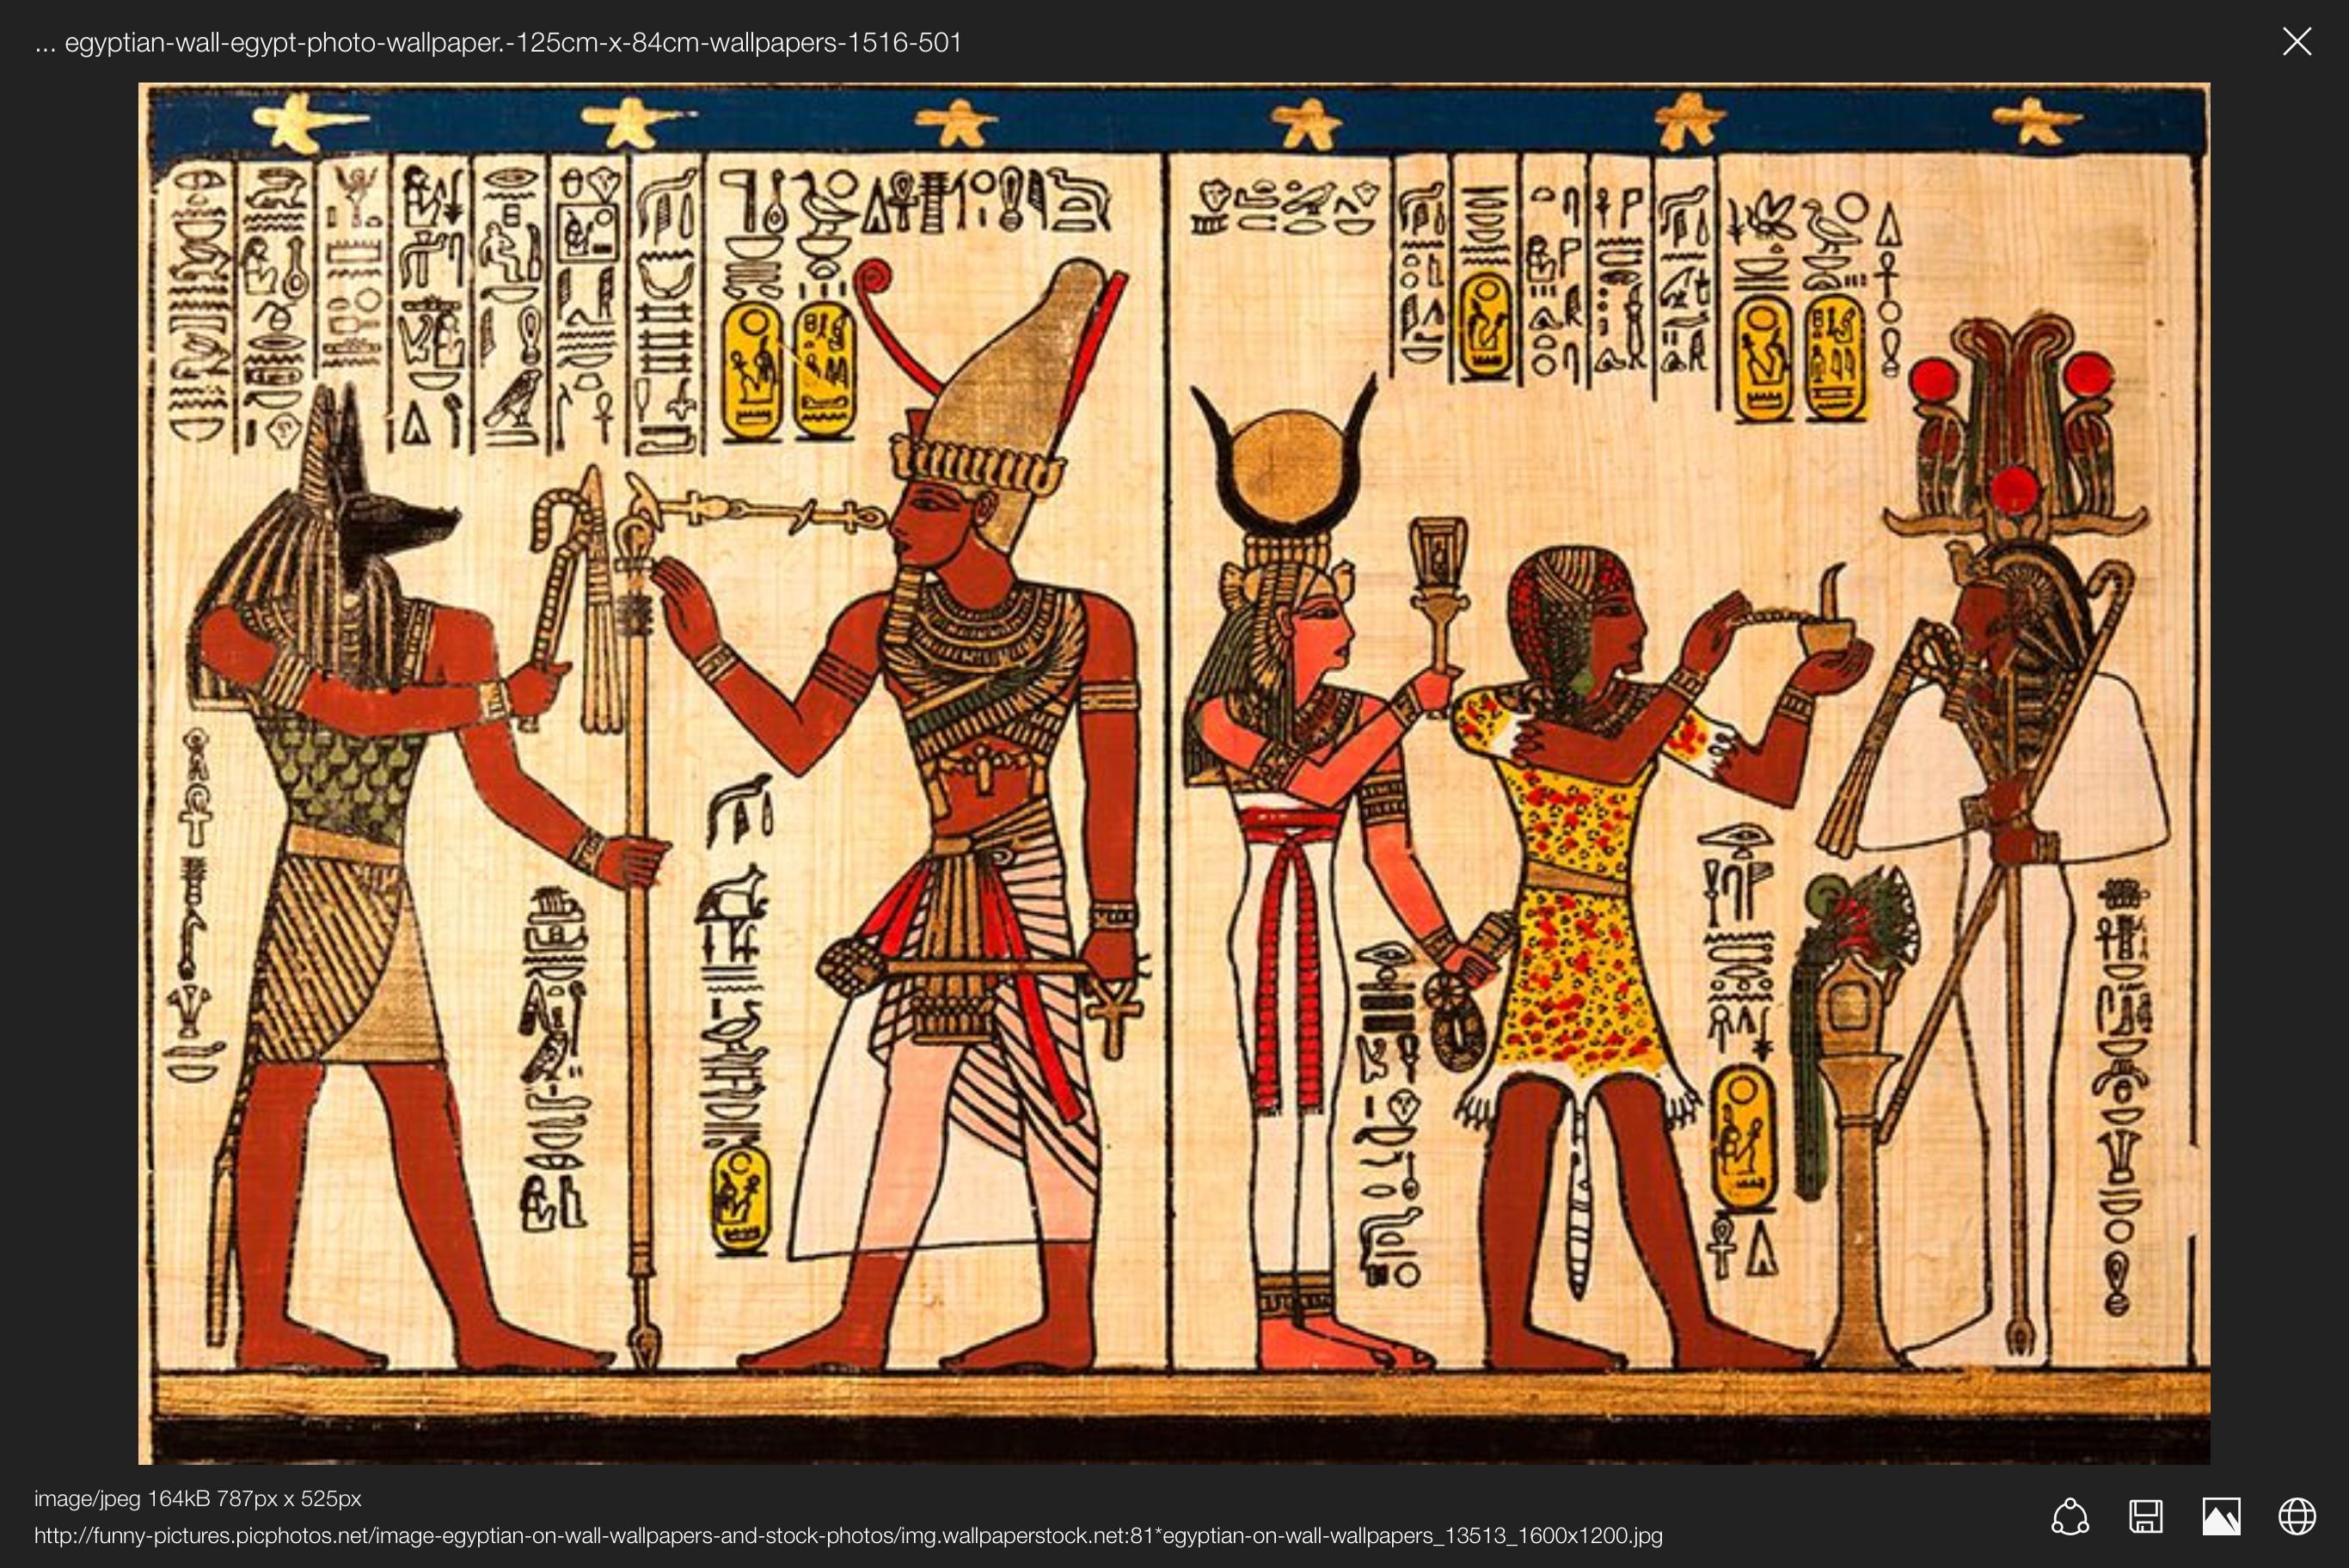 Egypt ideas. egypt, ancient egypt, egypt wallpaper